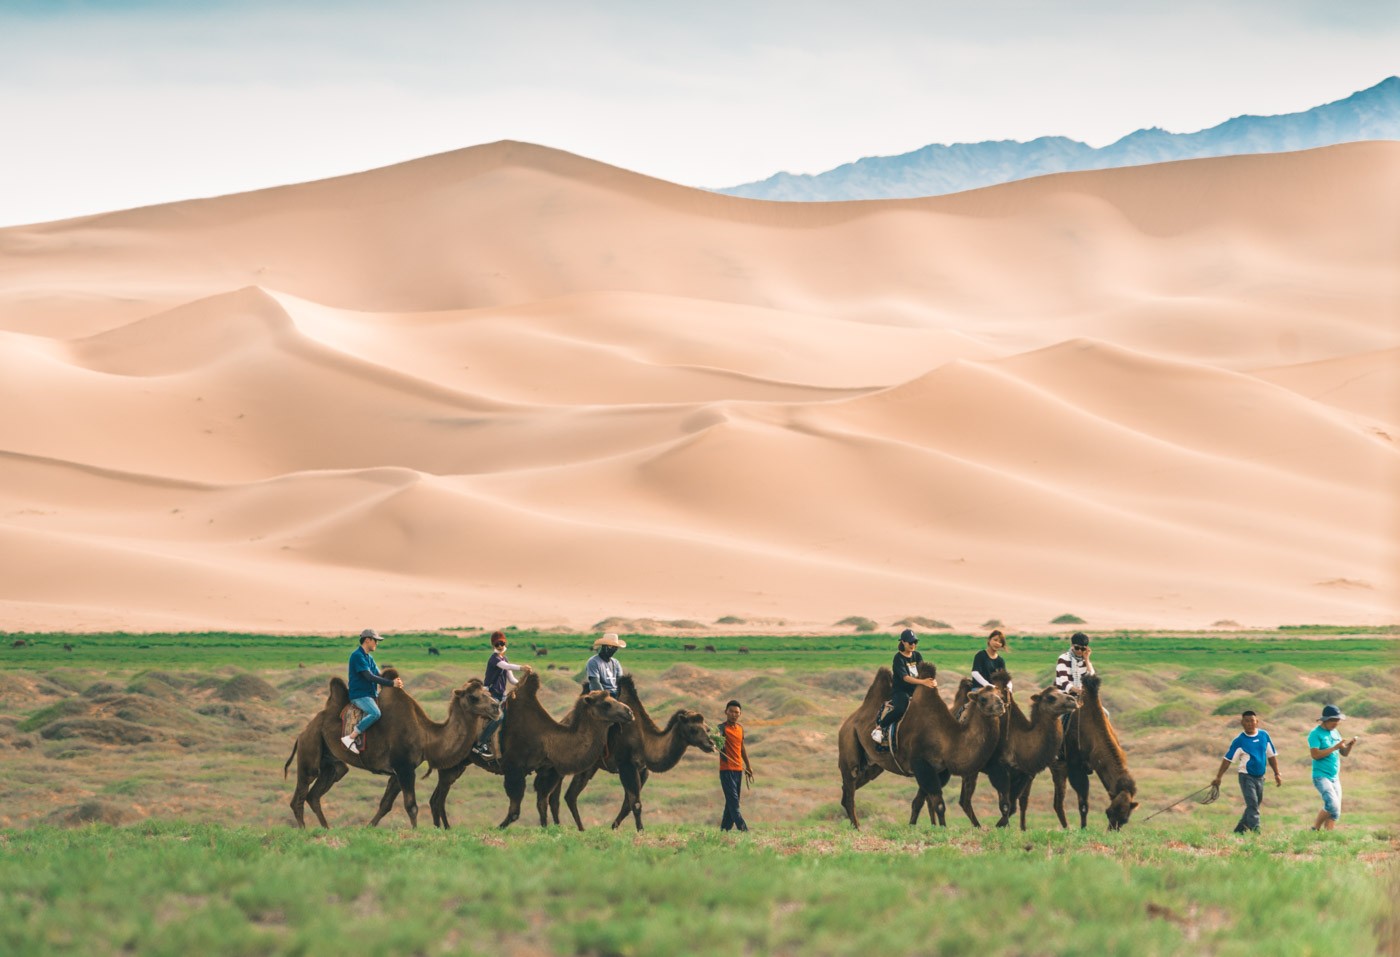 Mongolia Gobi desert camel ride 0853